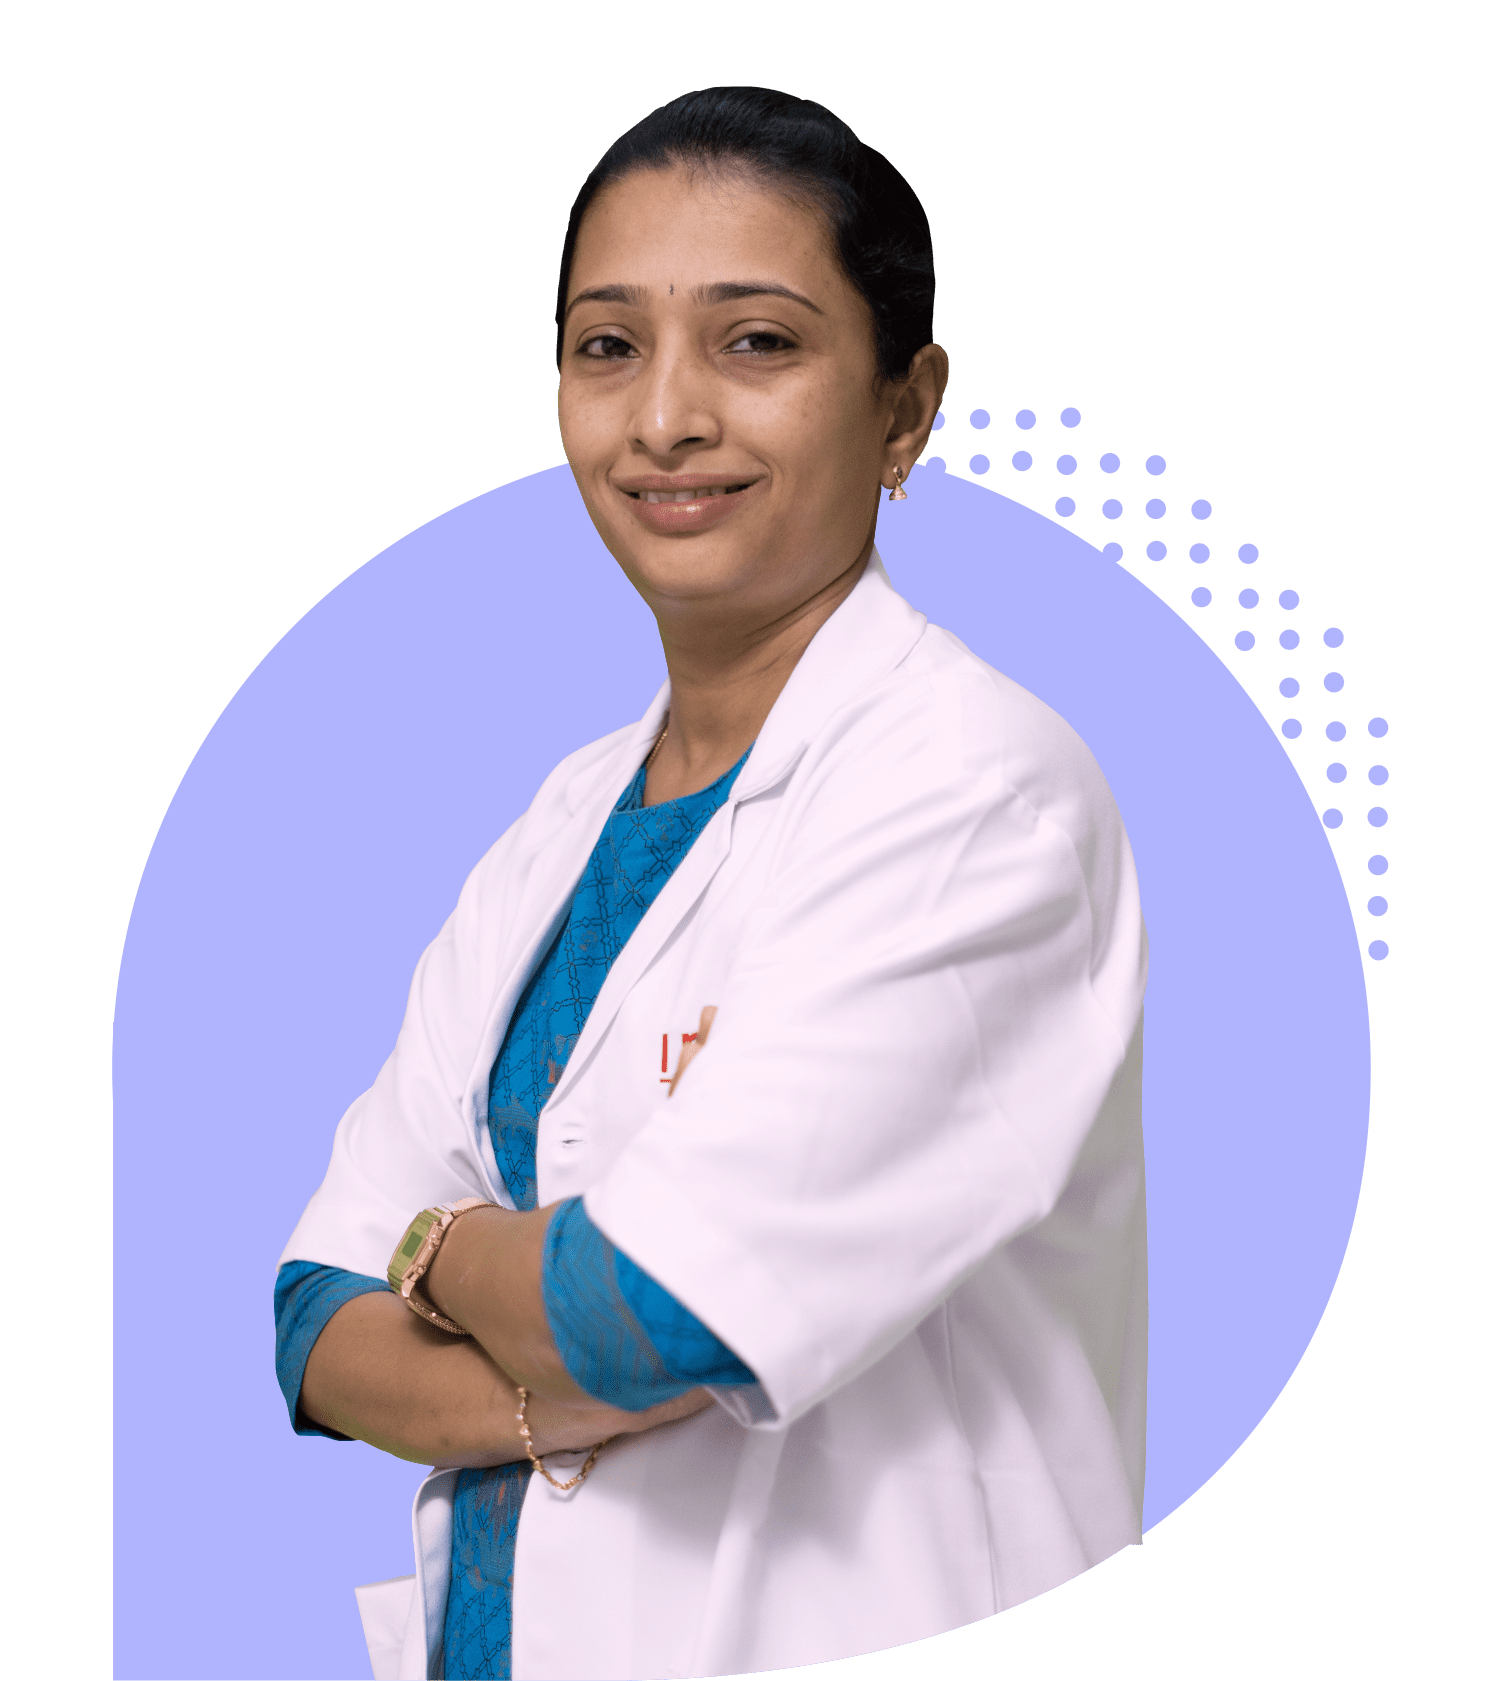 Dr Chaitanya